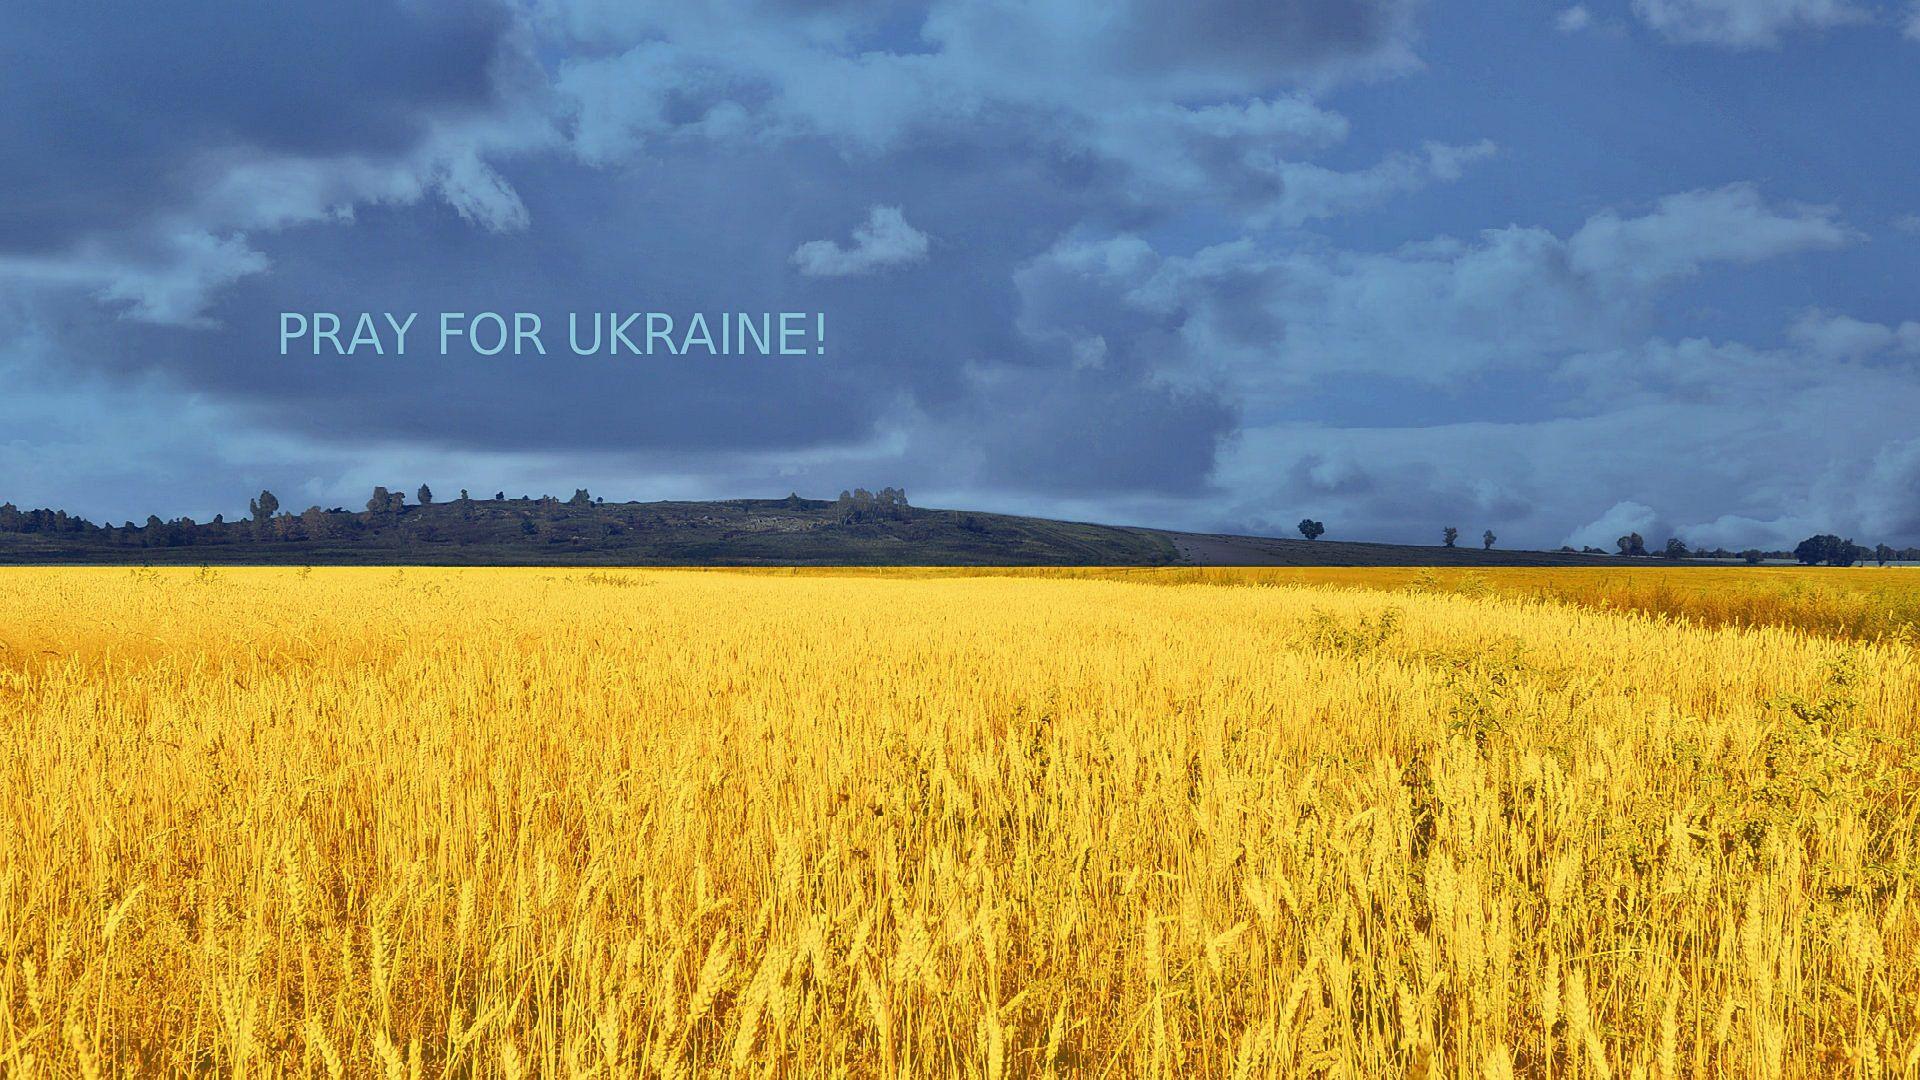 Ukraine Wallpapers, HD Ukraine Backgrounds, Free Images Download